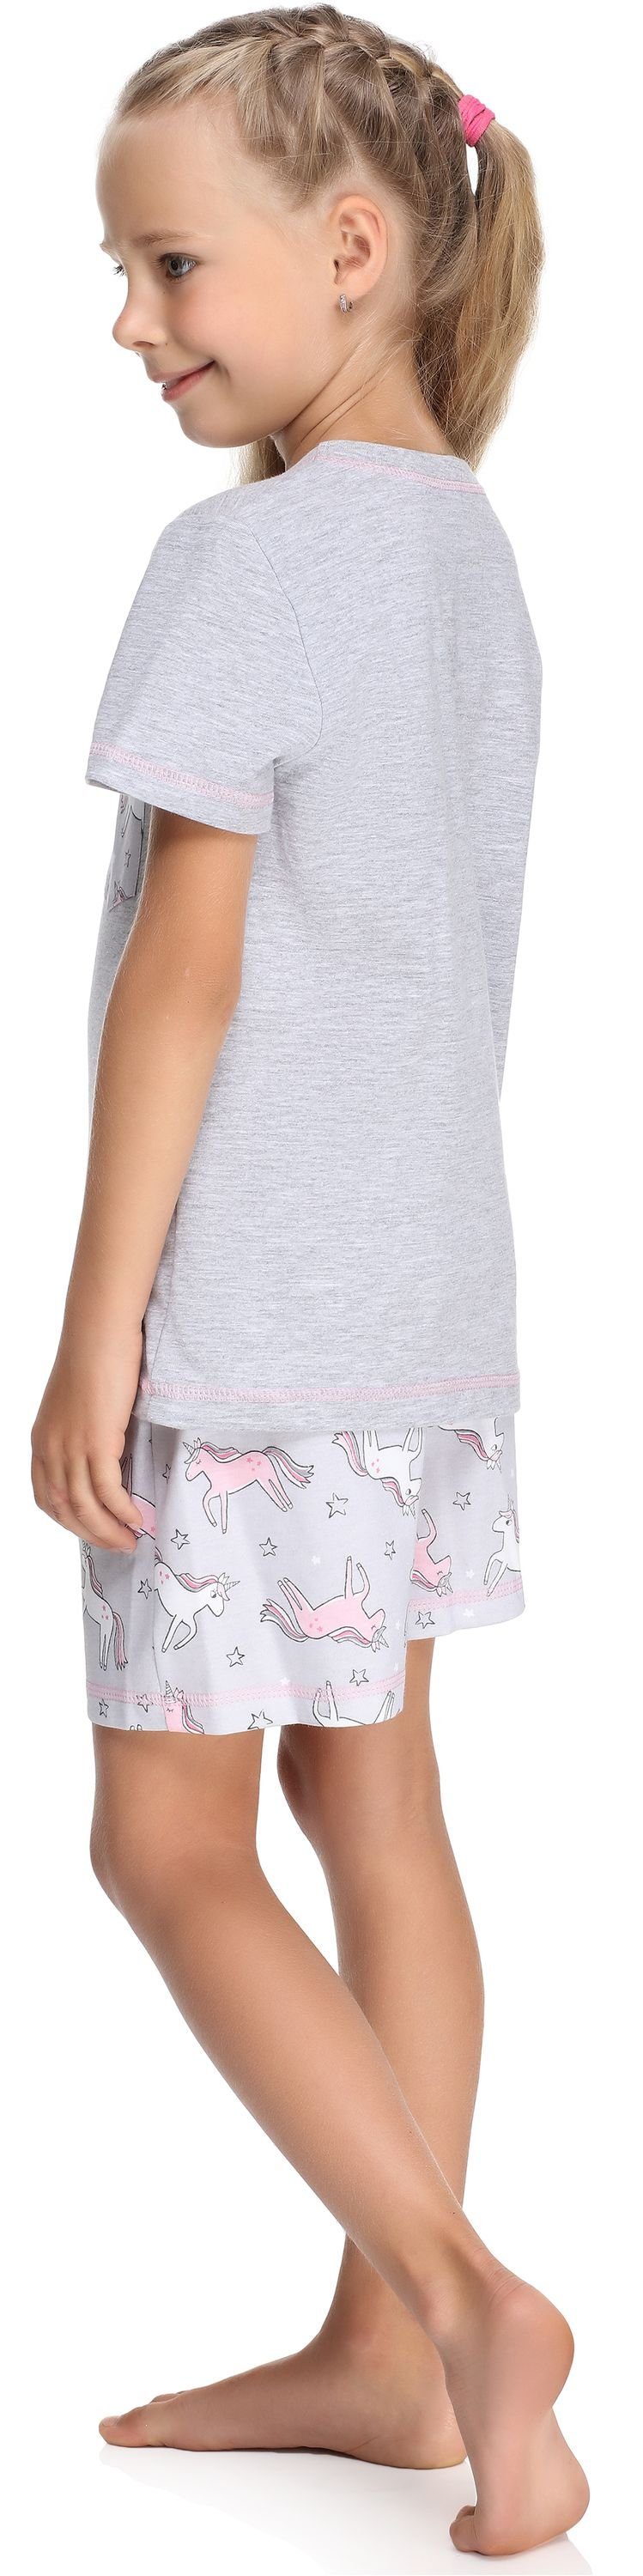 Merry Style Baumwolle Set MS10-292 Mädchen Kurz Pyjama Schlafanzüge aus Schlafanzug Melange/Einhorn